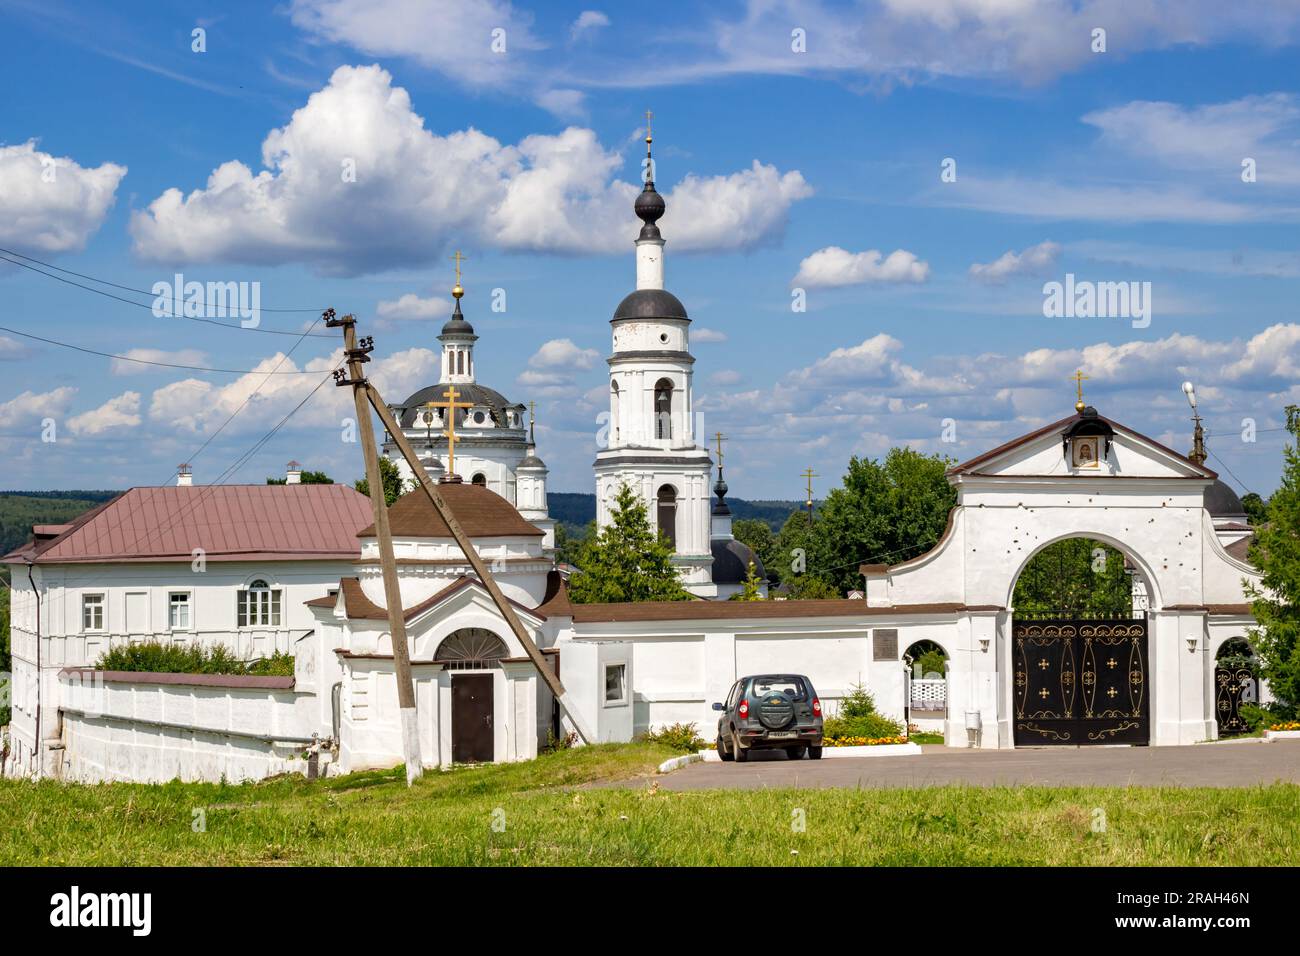 MALOYAROSLAVETS, RUSSIA - JULY 2015: Svyato-Nikolskiy Chernoostrovskiy convent monastery in Maloyaroslavets Stock Photo